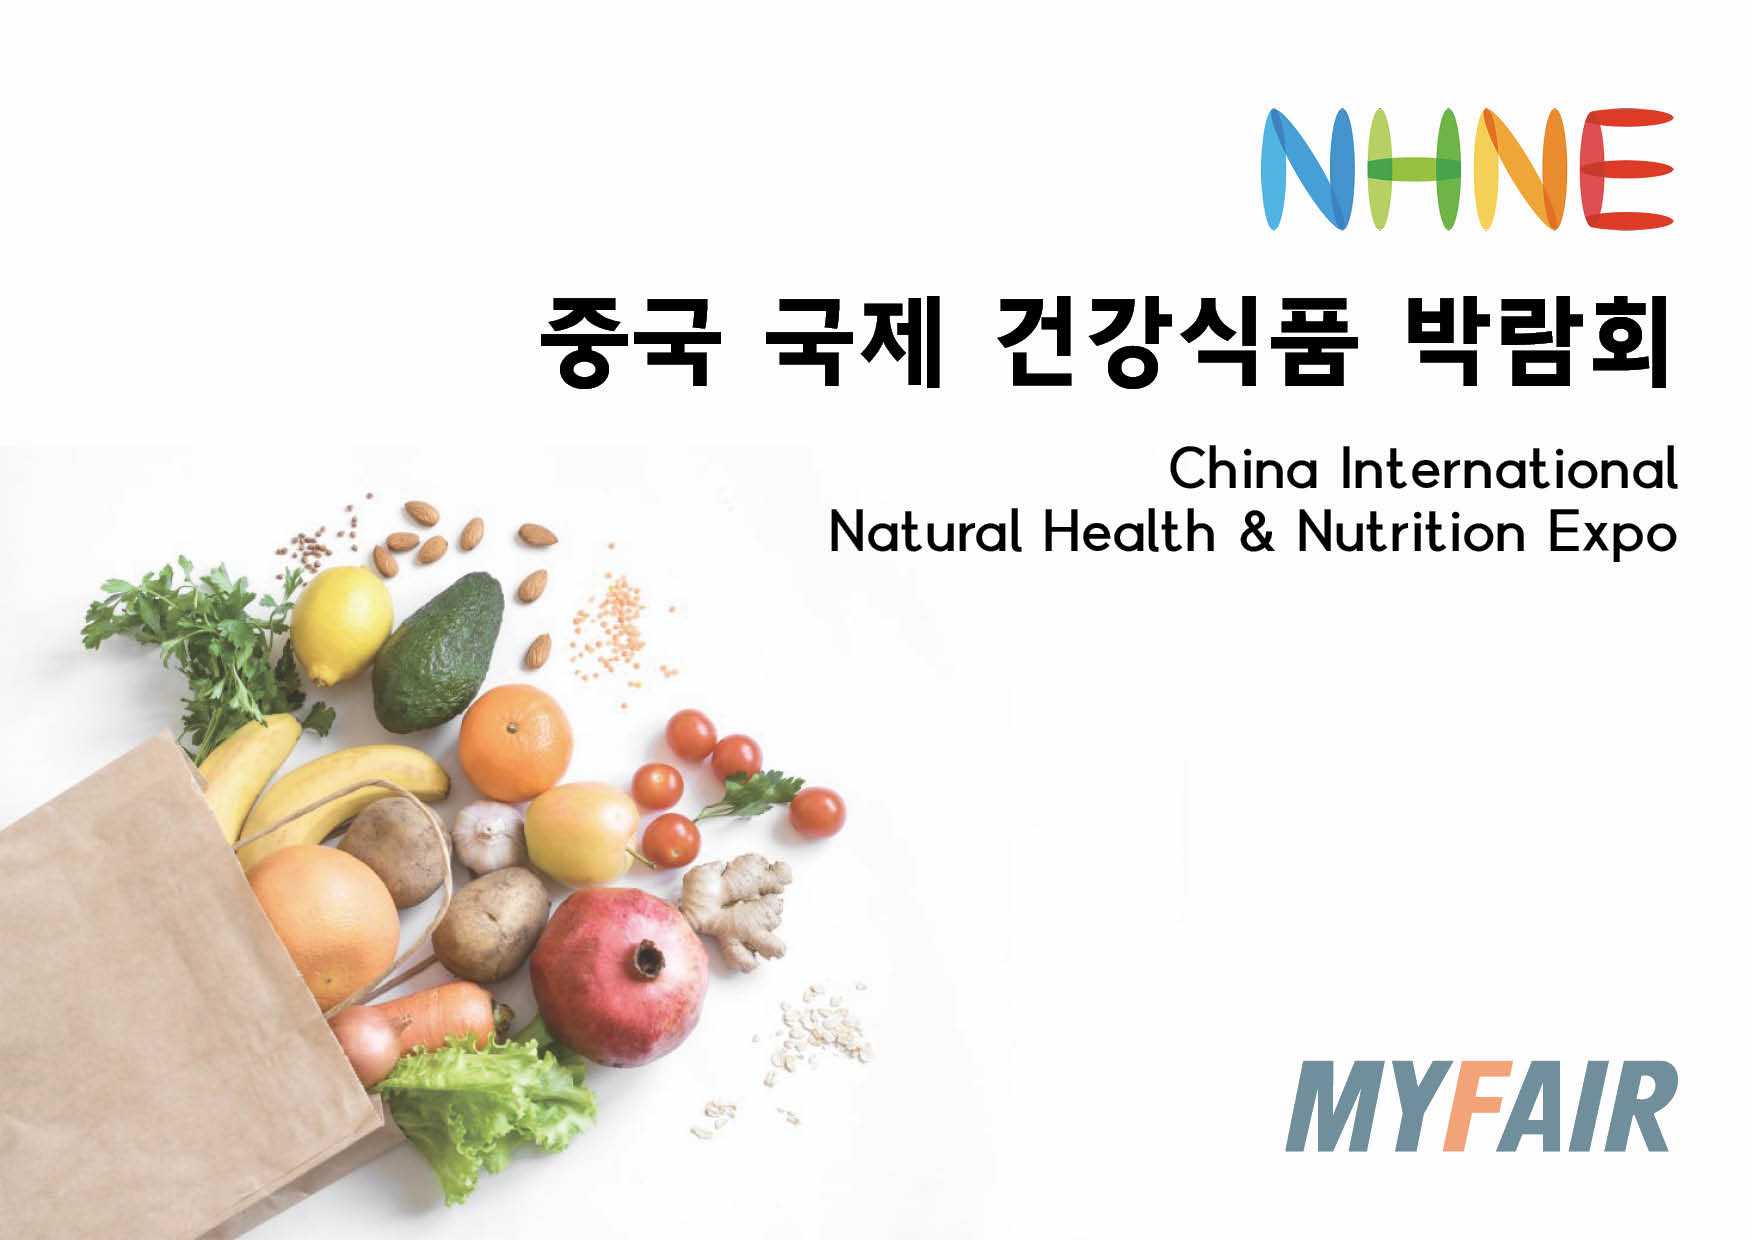 마이페어에서 중국국제건강식품 박람회 부스예약을 할 수 있습니다. 